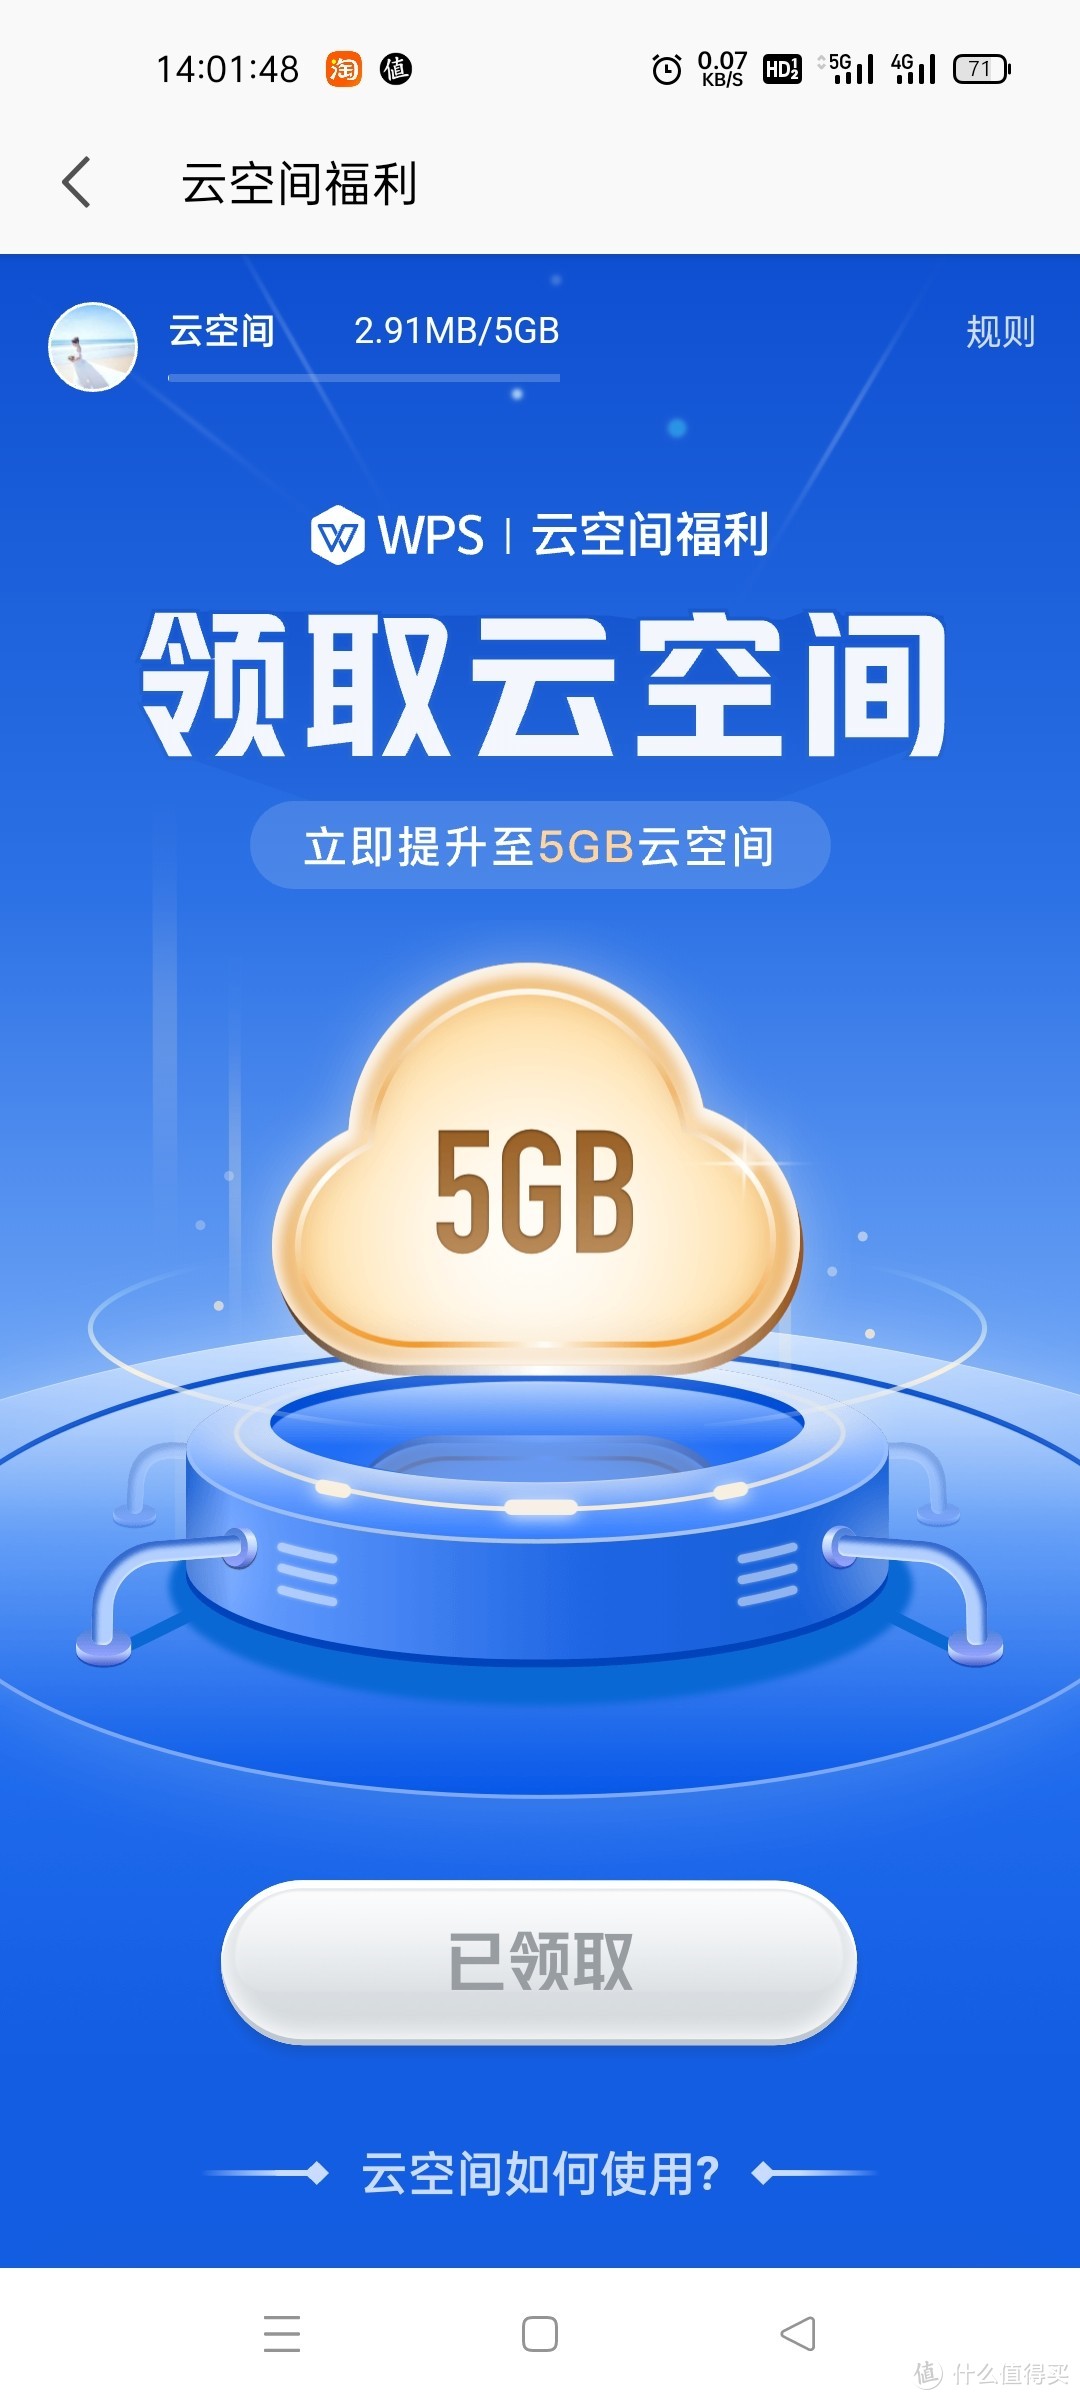 wps云空间福利立即提升至5GB